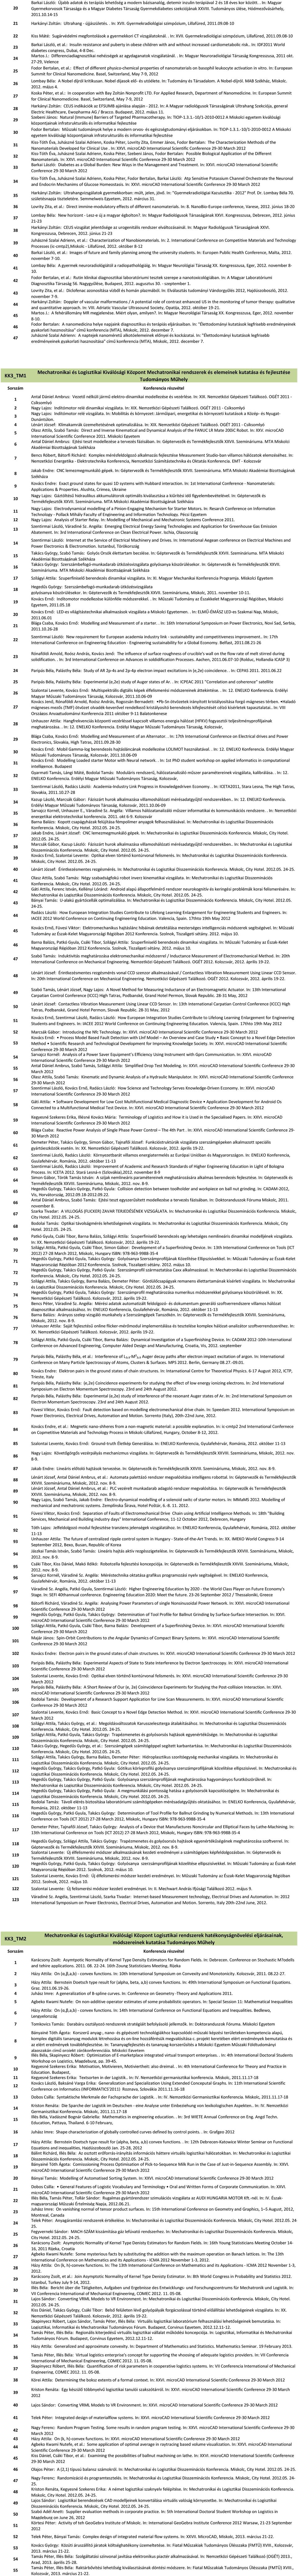 Gyermekradiológiai szimpózium, Lillafüred, 0.0.0-0 Kiss Máté: Sugárvédelmi megfontolások a gyermekkori CT vizsgálatoknál.. In: XVII. Gyermekradiológiai szimpózium, Lillafüred, 0.0.0-0 0 Barkai László, et al.